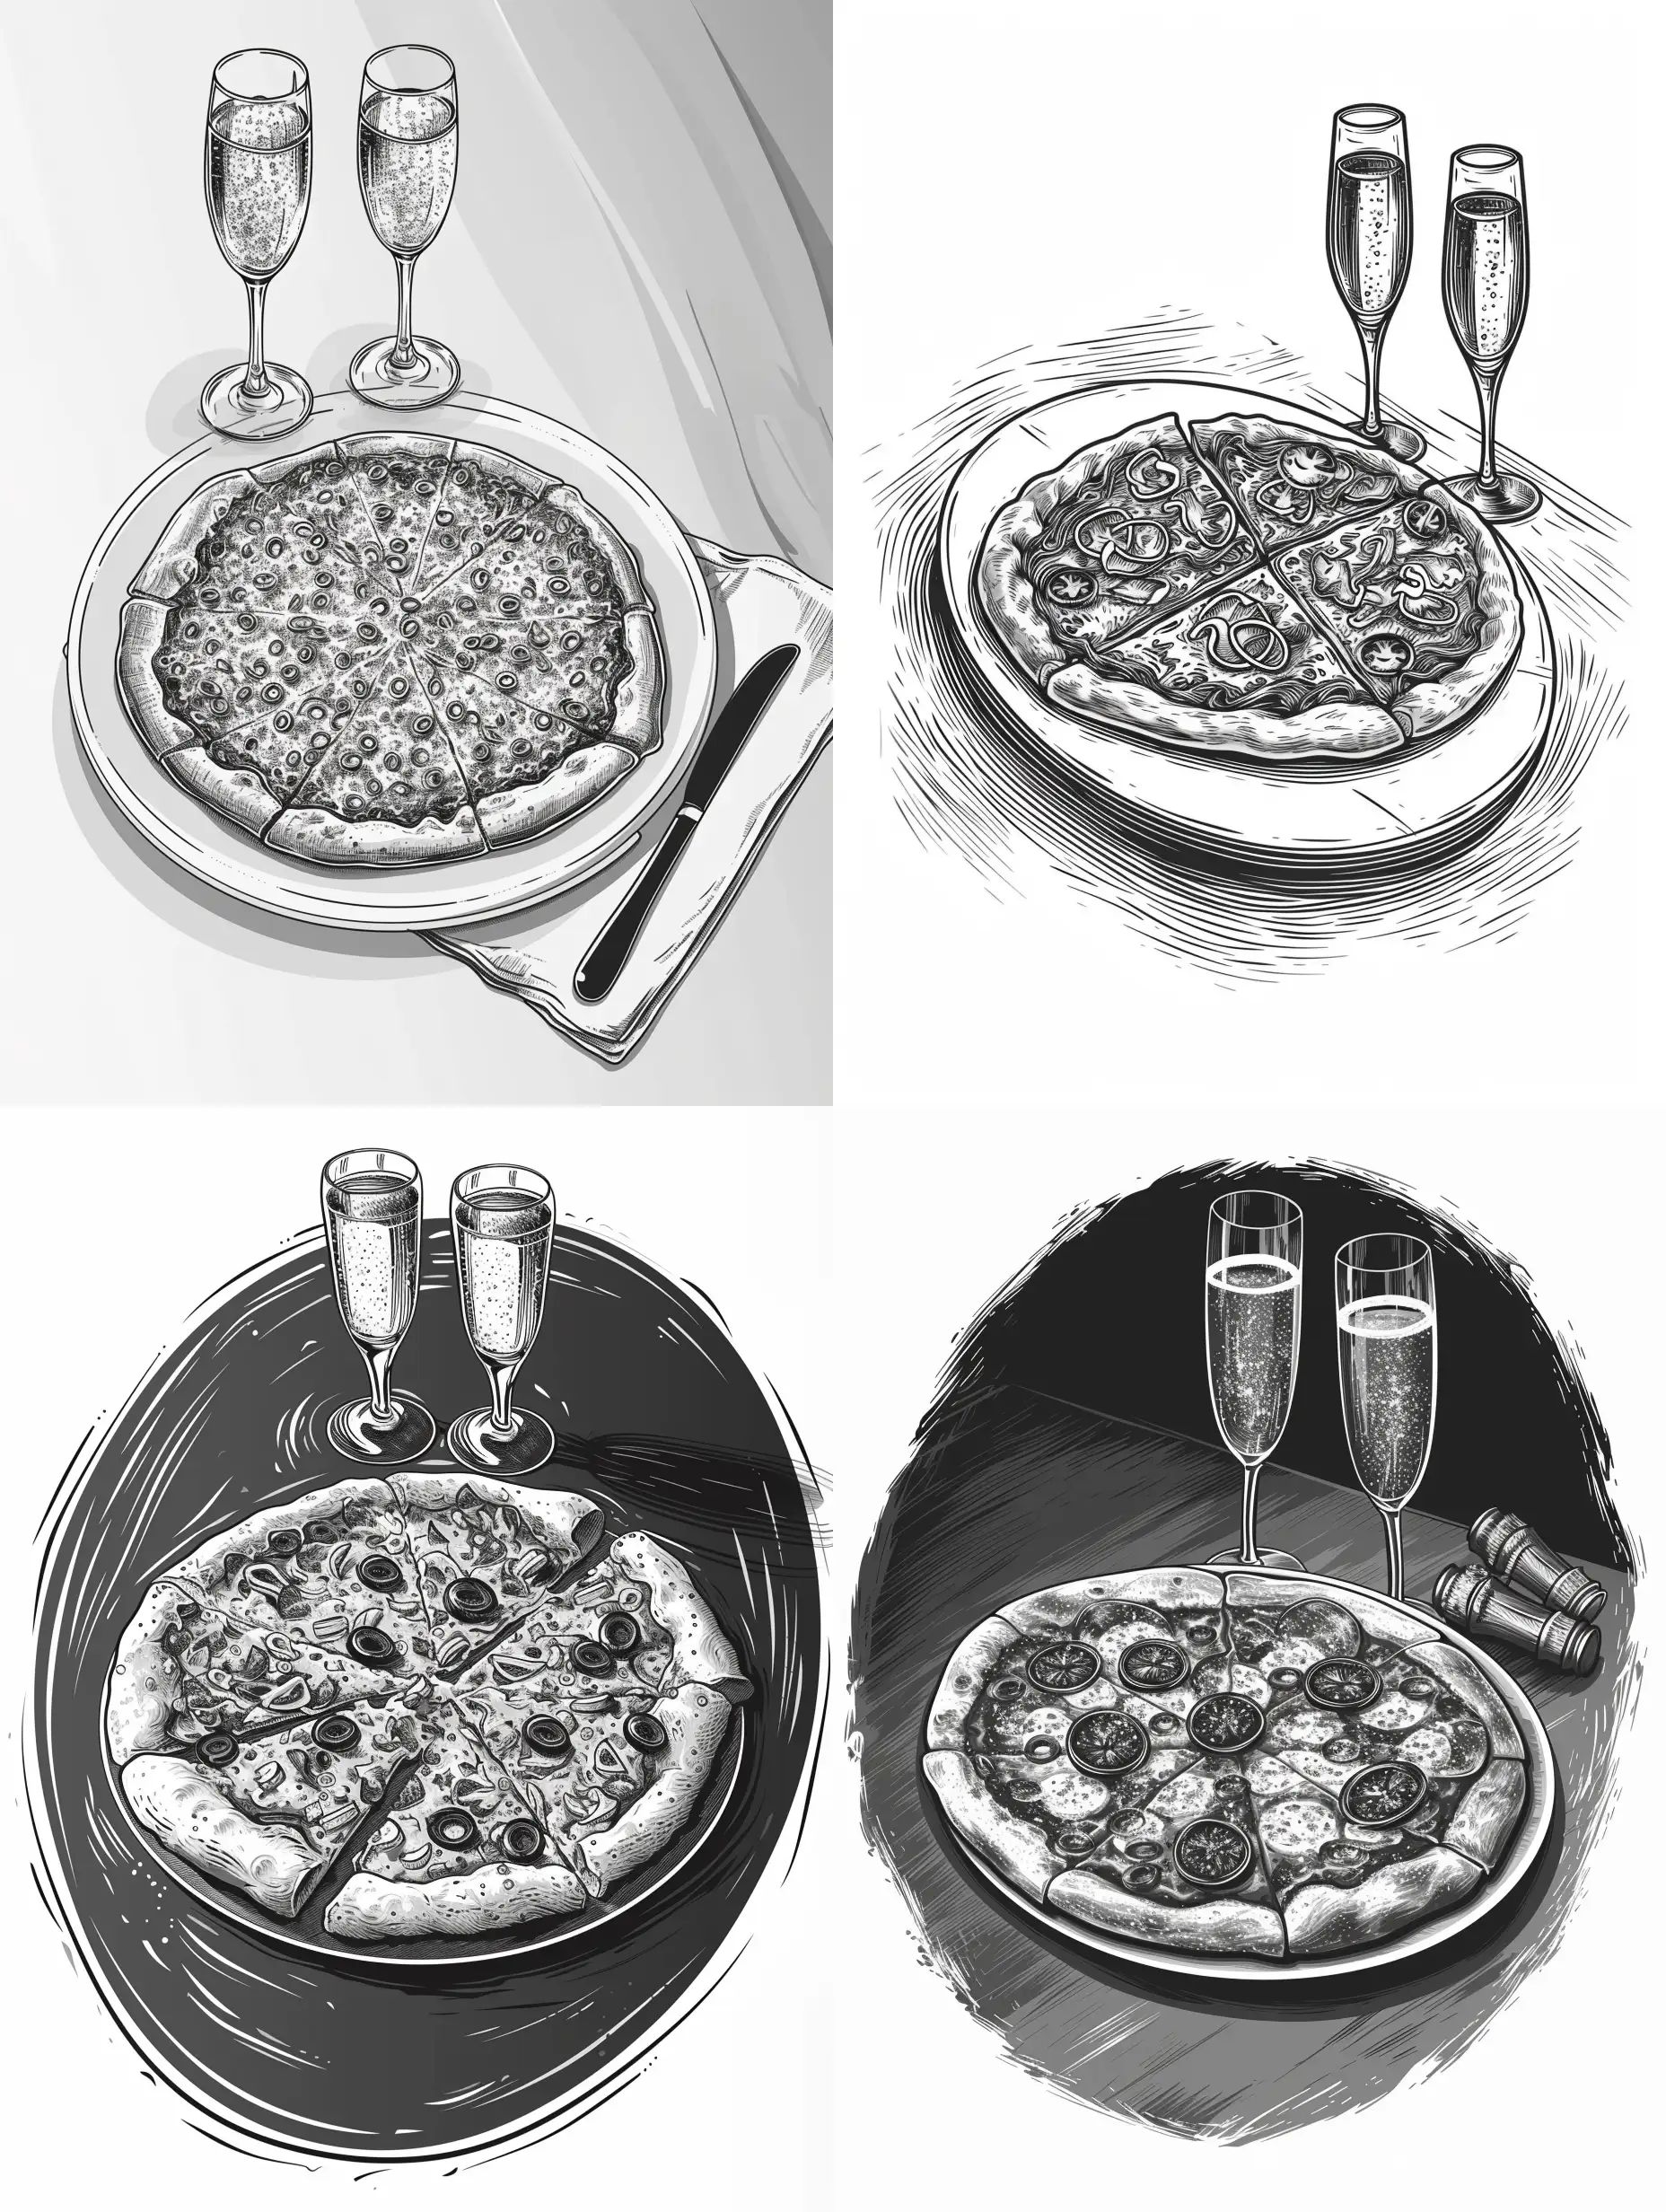 иллюстрация овальная целая пицца на столе и два бокала шампанского рядом в стиле минимализм, вектор, чёрно-белая